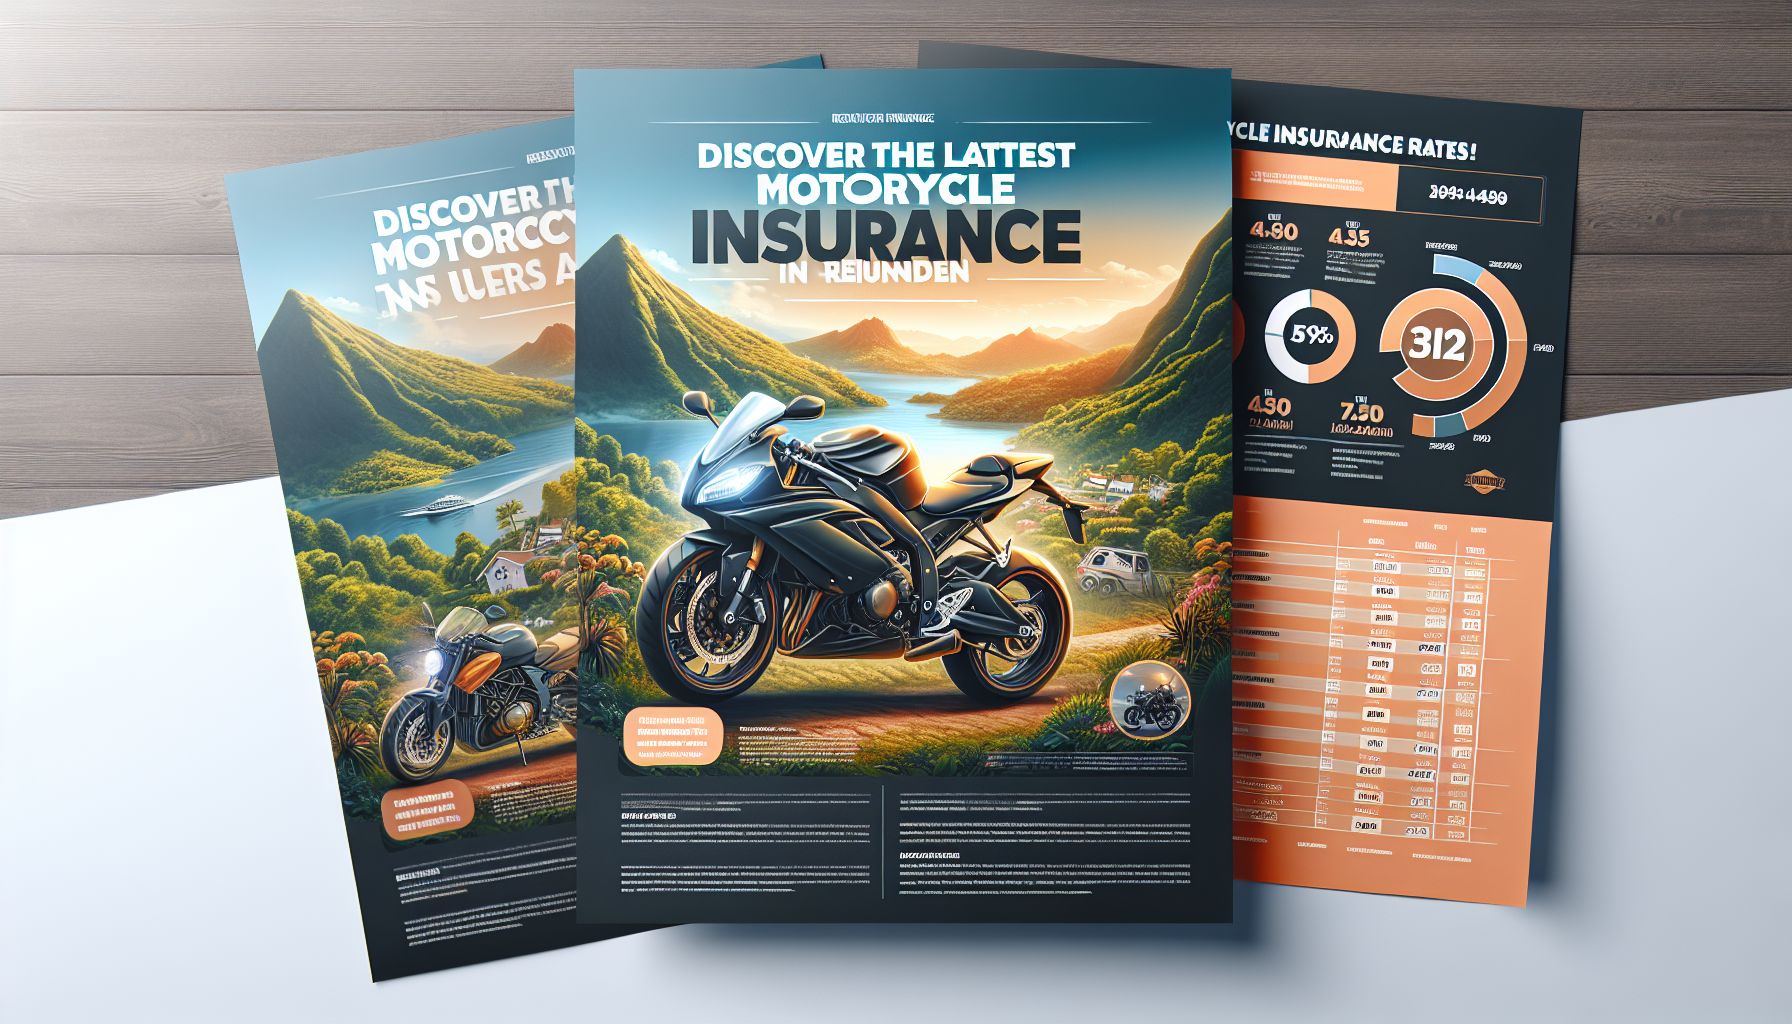 découvrez les derniers tarifs d'assurance moto à la réunion et trouvez la meilleure offre pour assurer votre véhicule au meilleur prix.